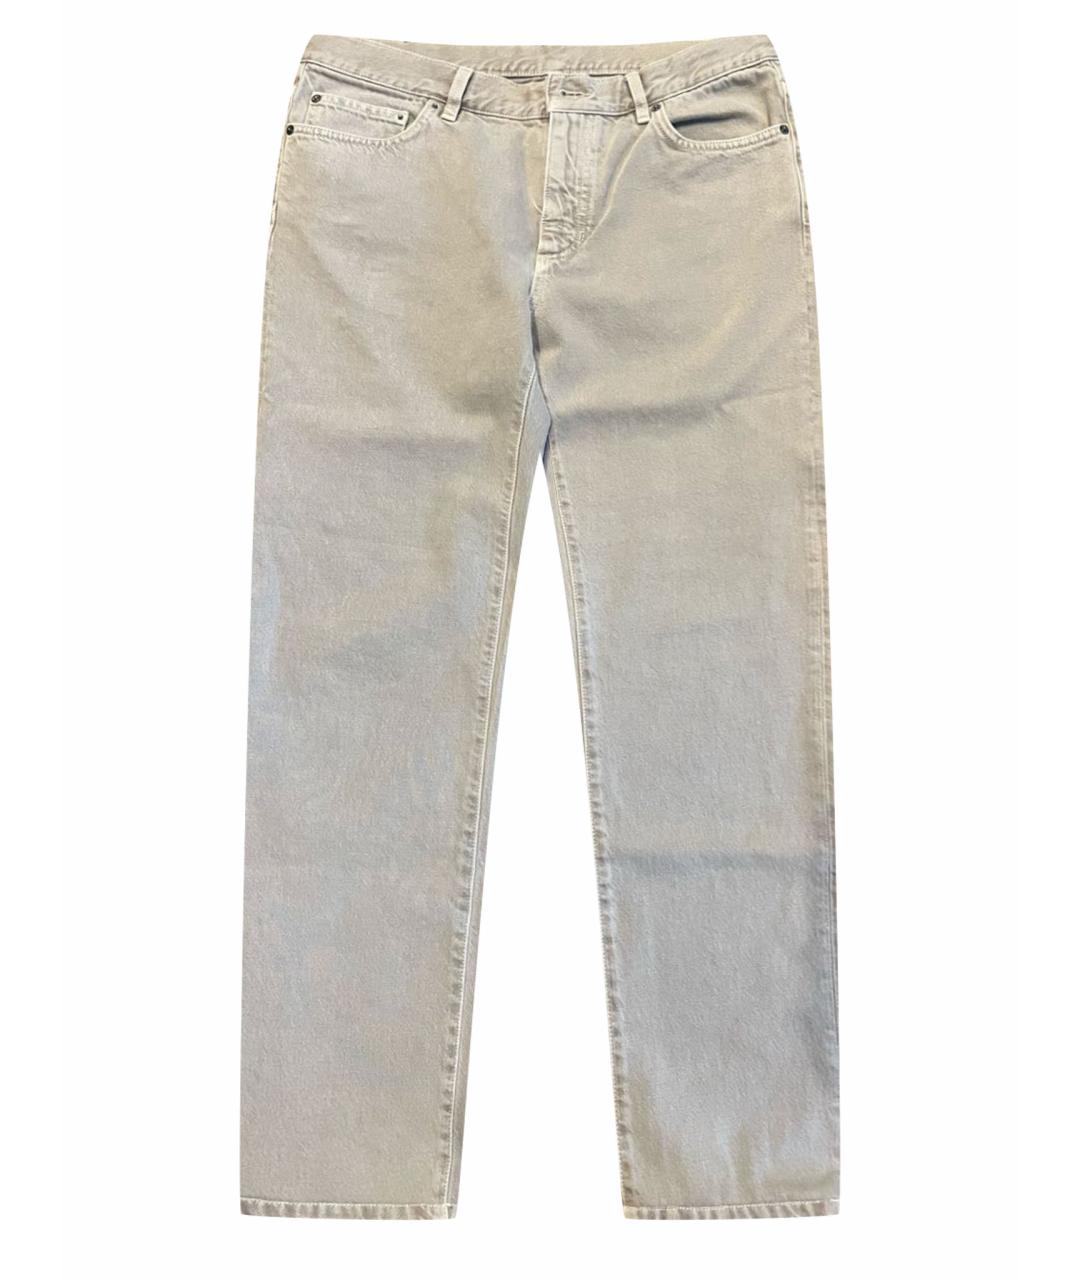 ZEGNA SPORT Бежевые хлопковые джинсы скинни, фото 1